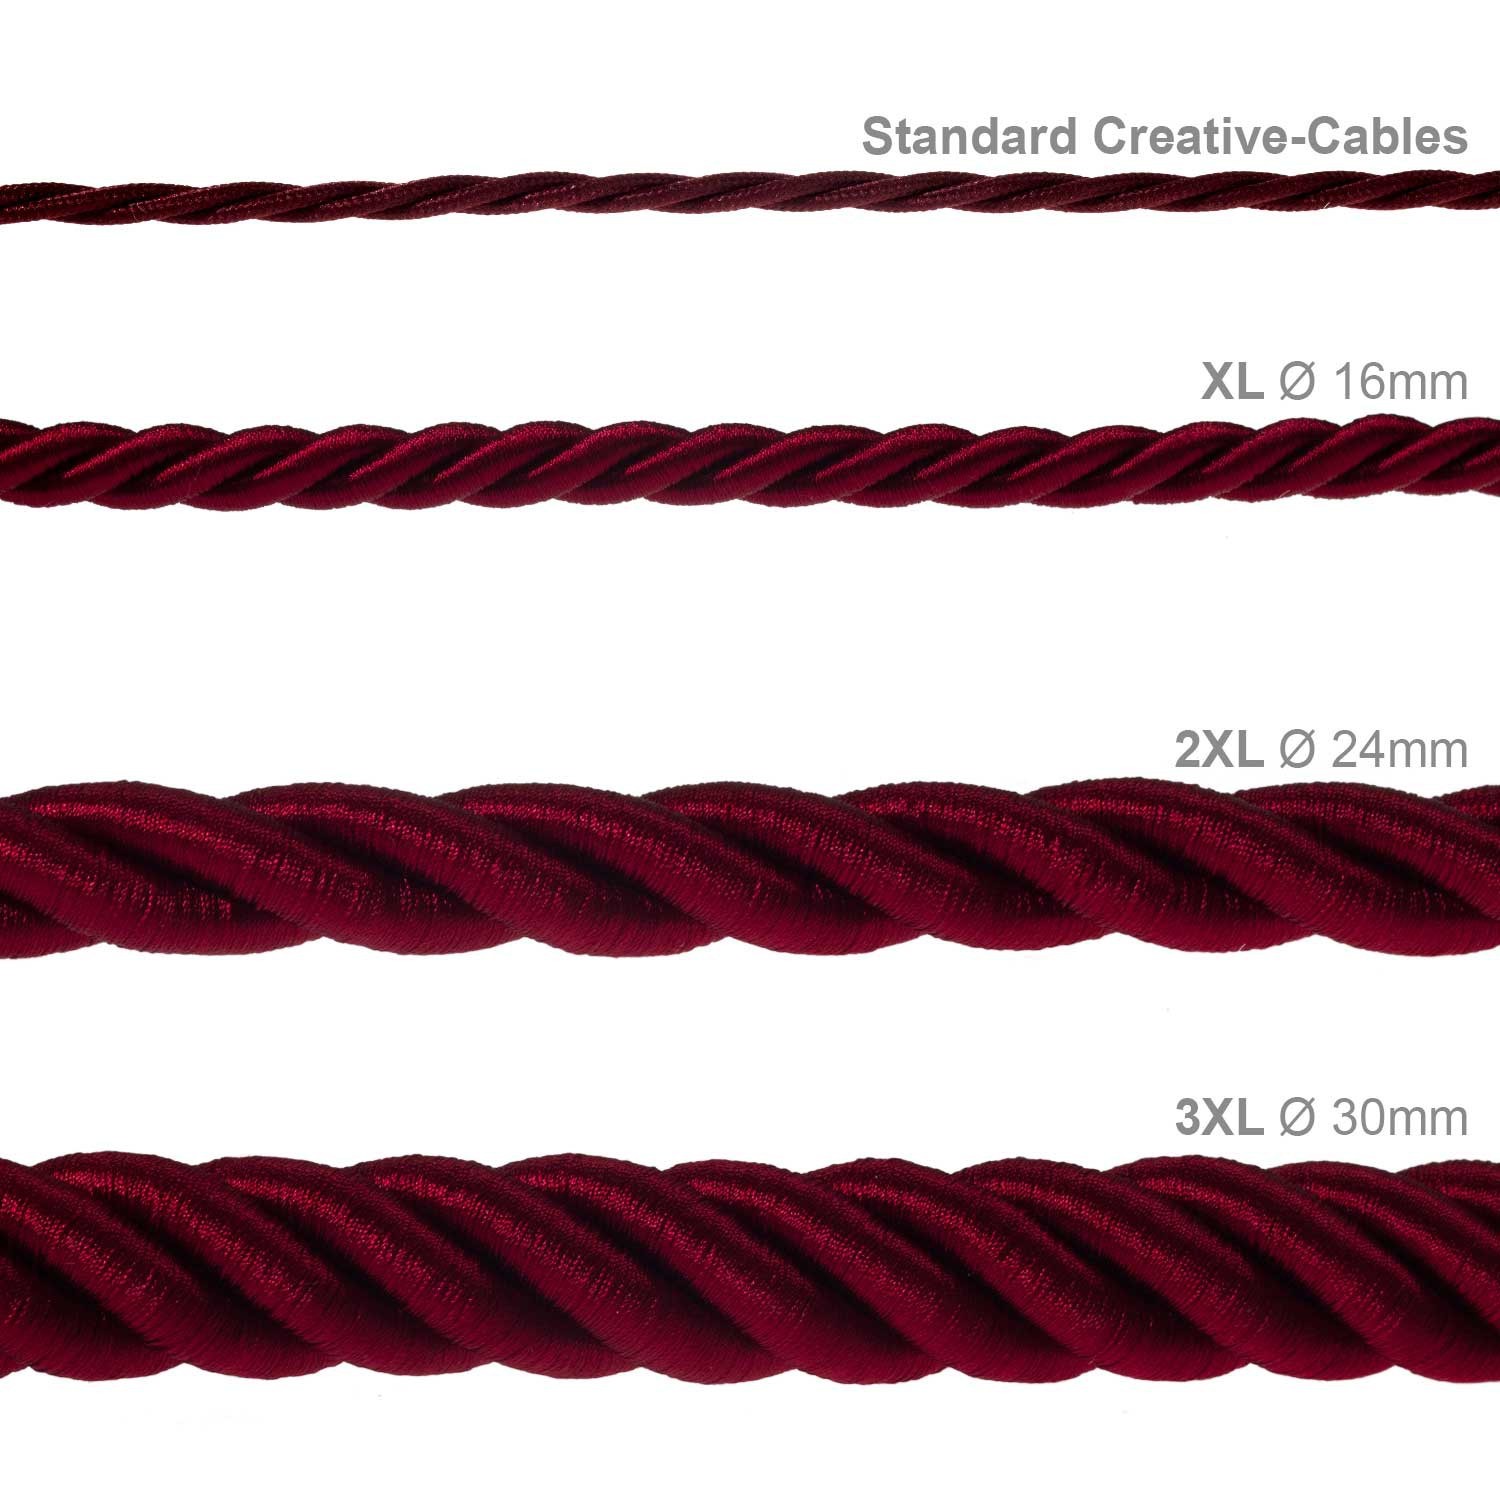 Cordón 2XL, cable eléctrico 3x0,75, recubierto en tejido bordeos oscuro brillante. Diámetro: 24mm.